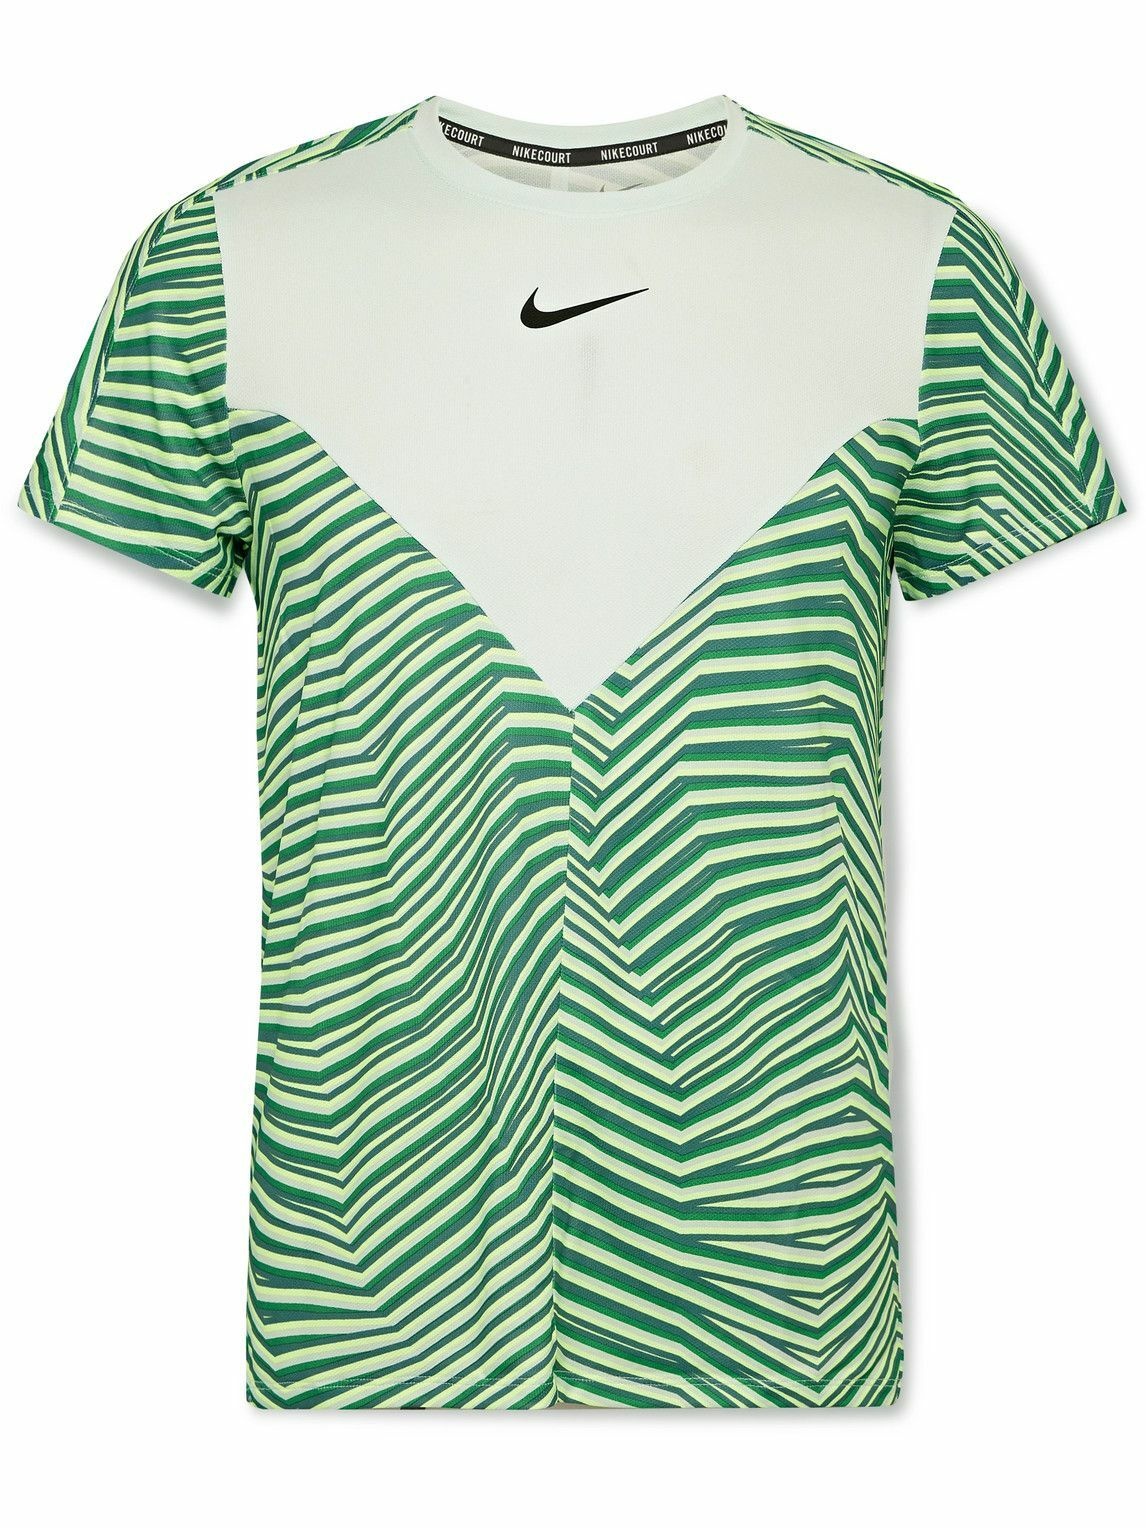 Nike Tennis - NikeCourt Slam Slim-Fit Striped Dri-FIT T-Shirt - Green ...